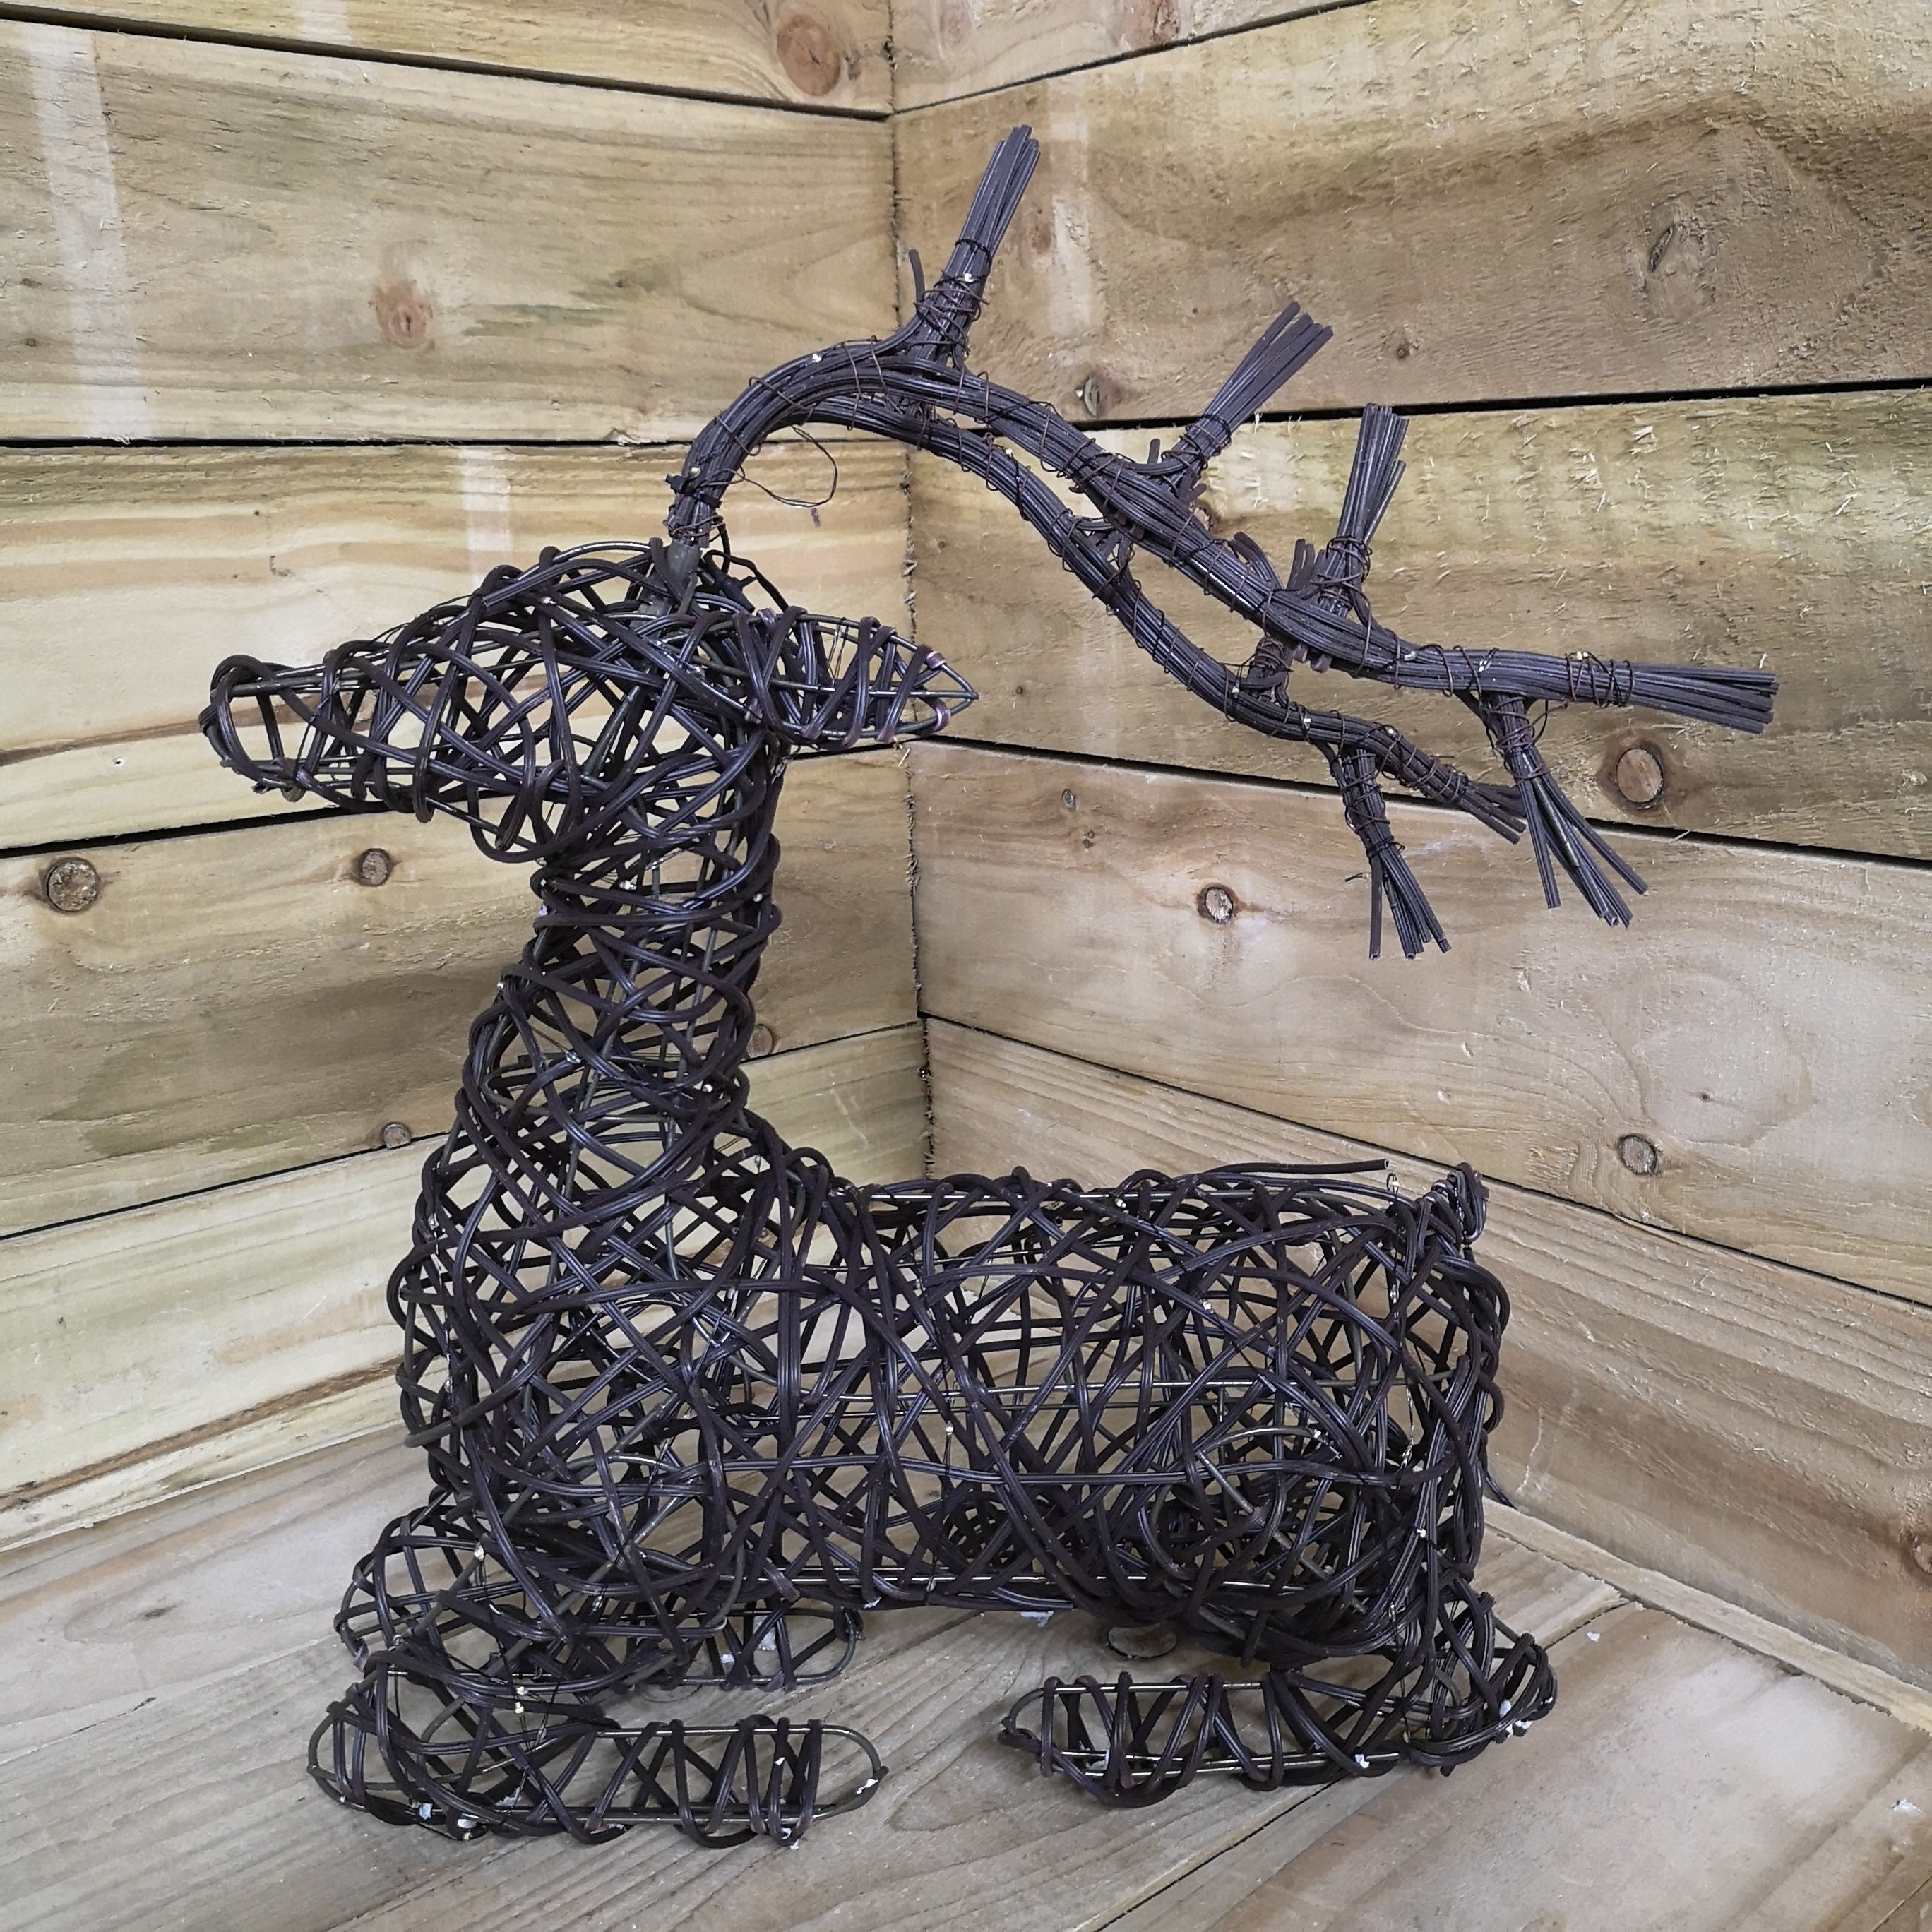 54cm LED Indoor Outdoor Wicker Sitting Reindeer Christmas Decoration 